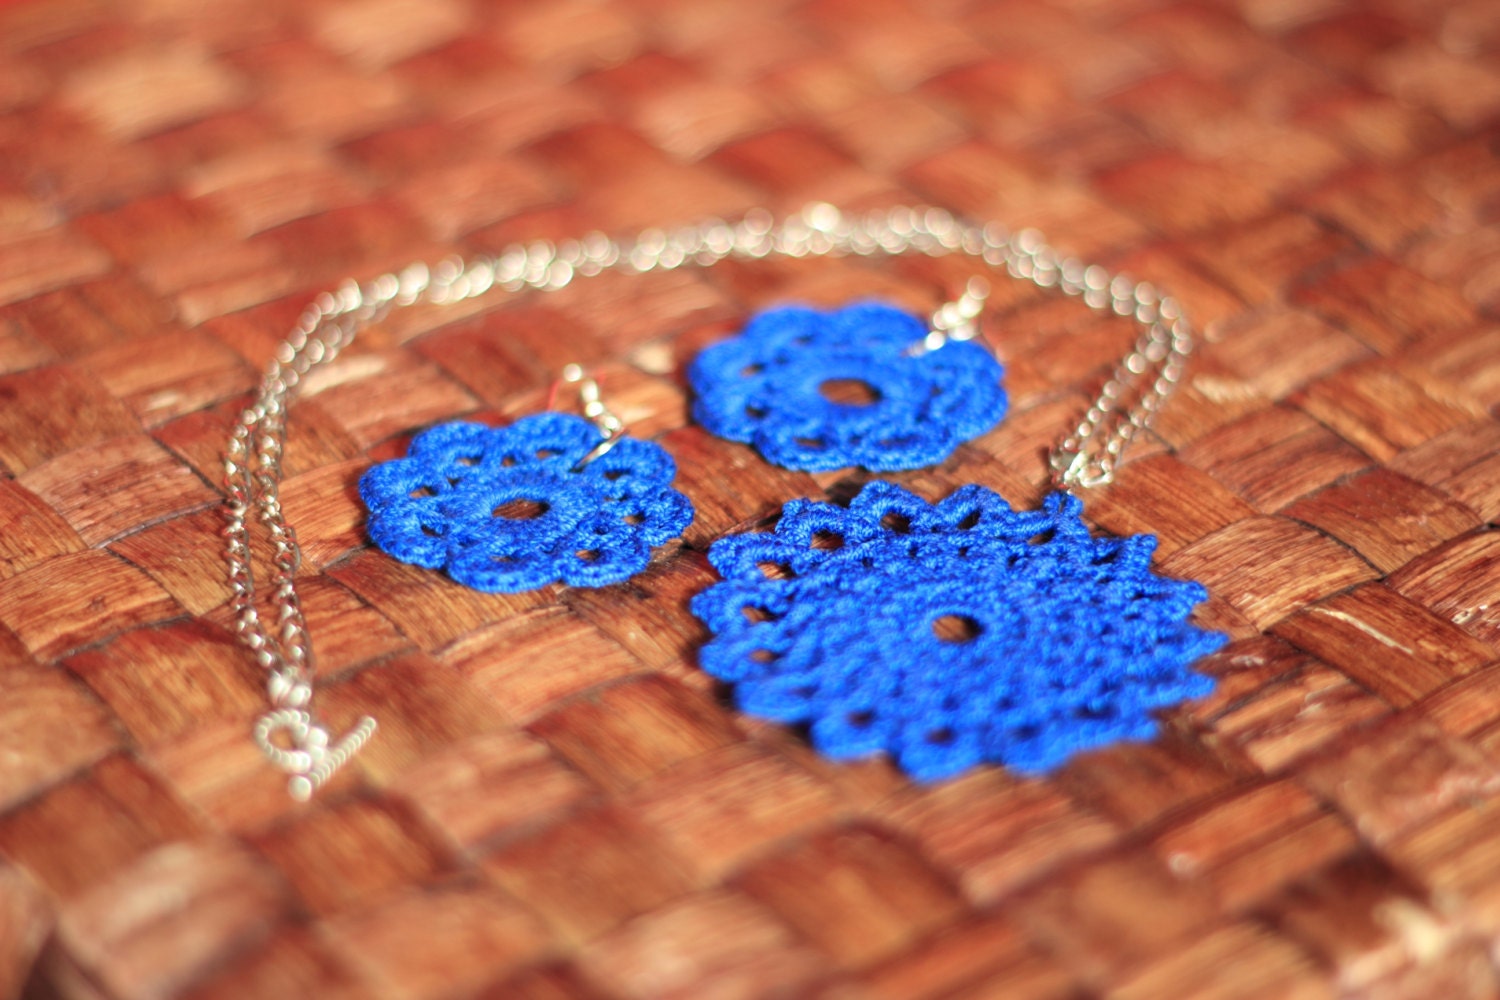 Lace crochet flower pendant and earrings in blue - IzabelkaG